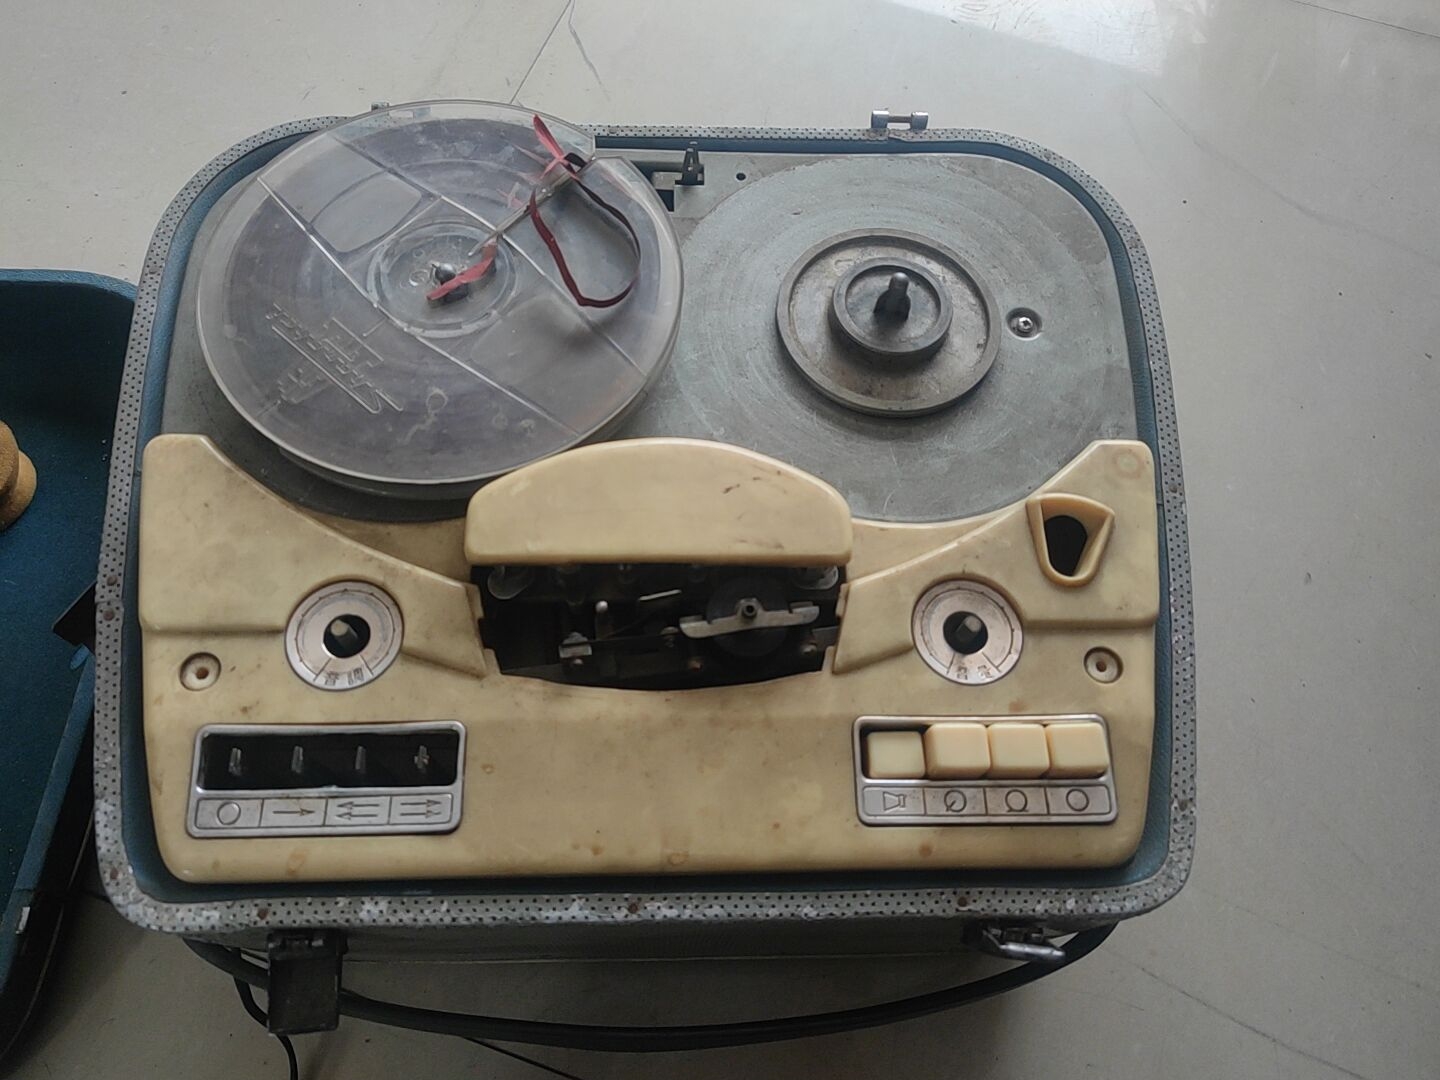 L601开盘机 上海录音器材厂 收来的 成色见图 好坏不知联系议价